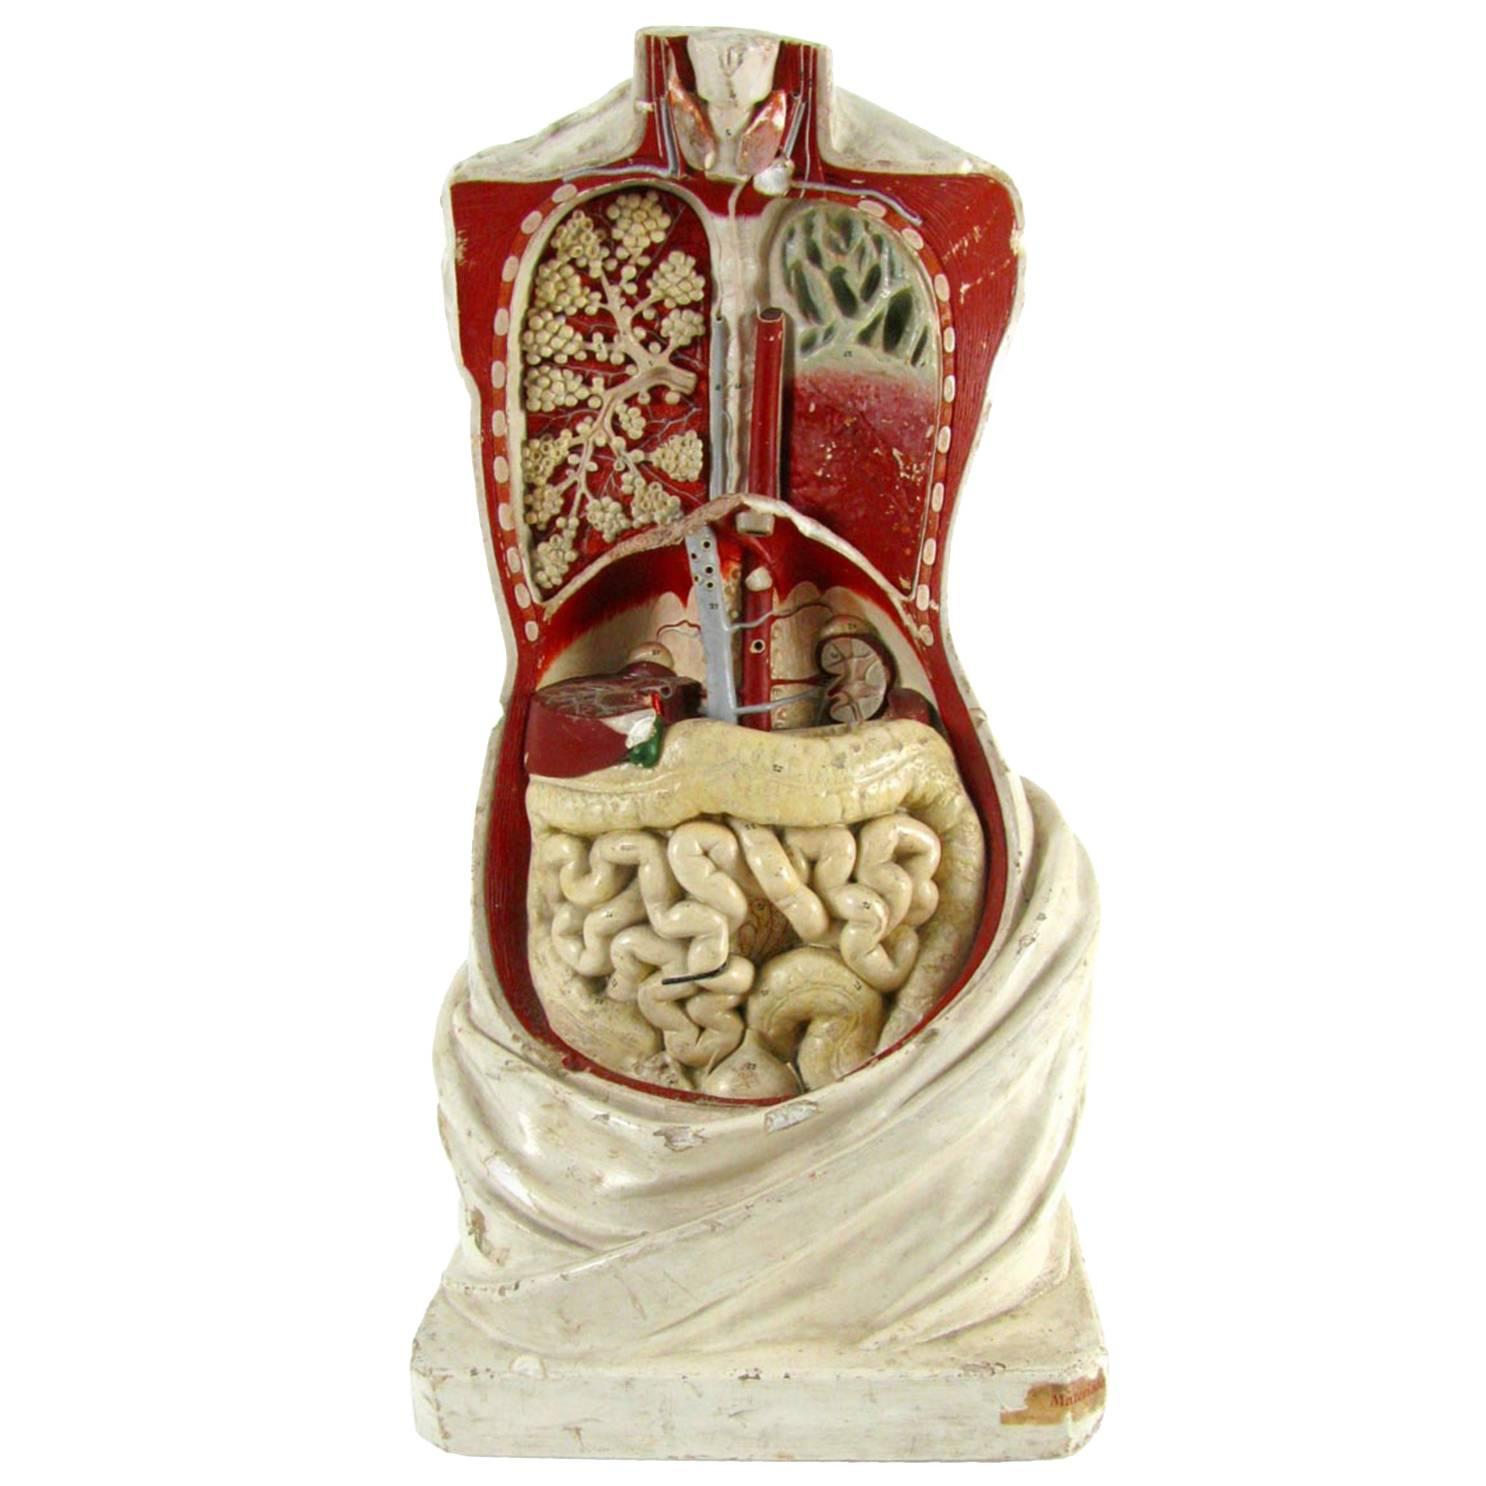 1870s German Plaster Sculpture Anatomical Torso Model by G. Steger Schkeuditz